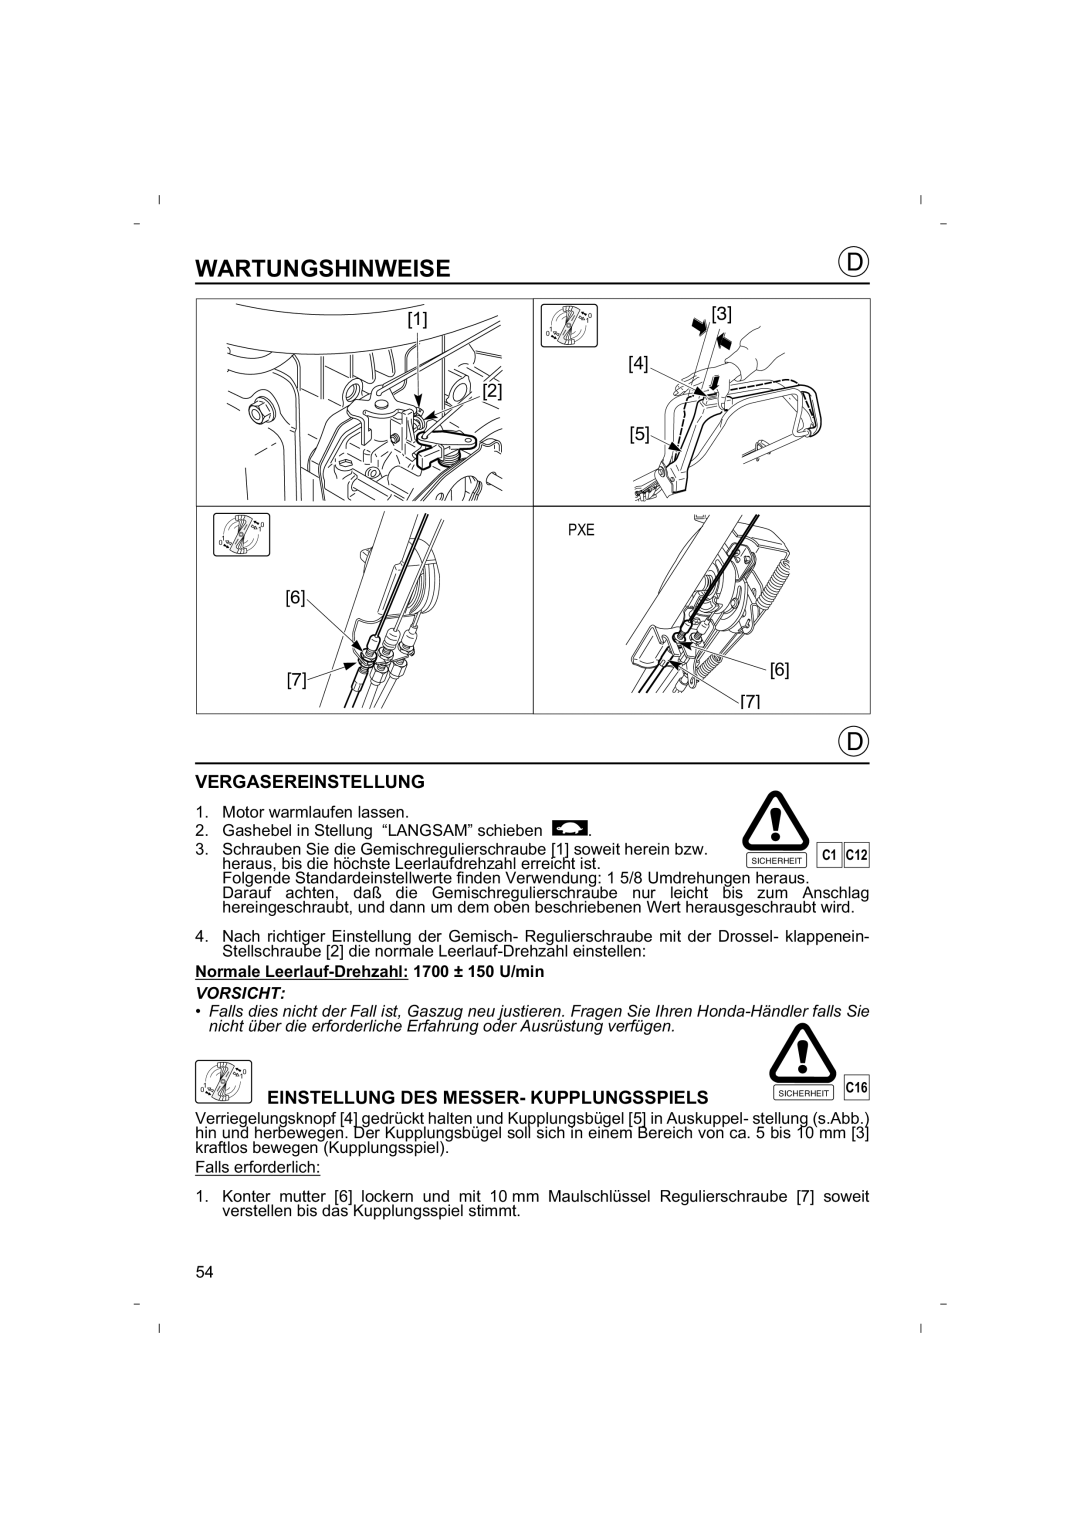 Honda Power Equipment HRB425C owner manual Vergasereinstellung, Einstellung Des Messer- Kupplungsspiels, Wartungshinweise 